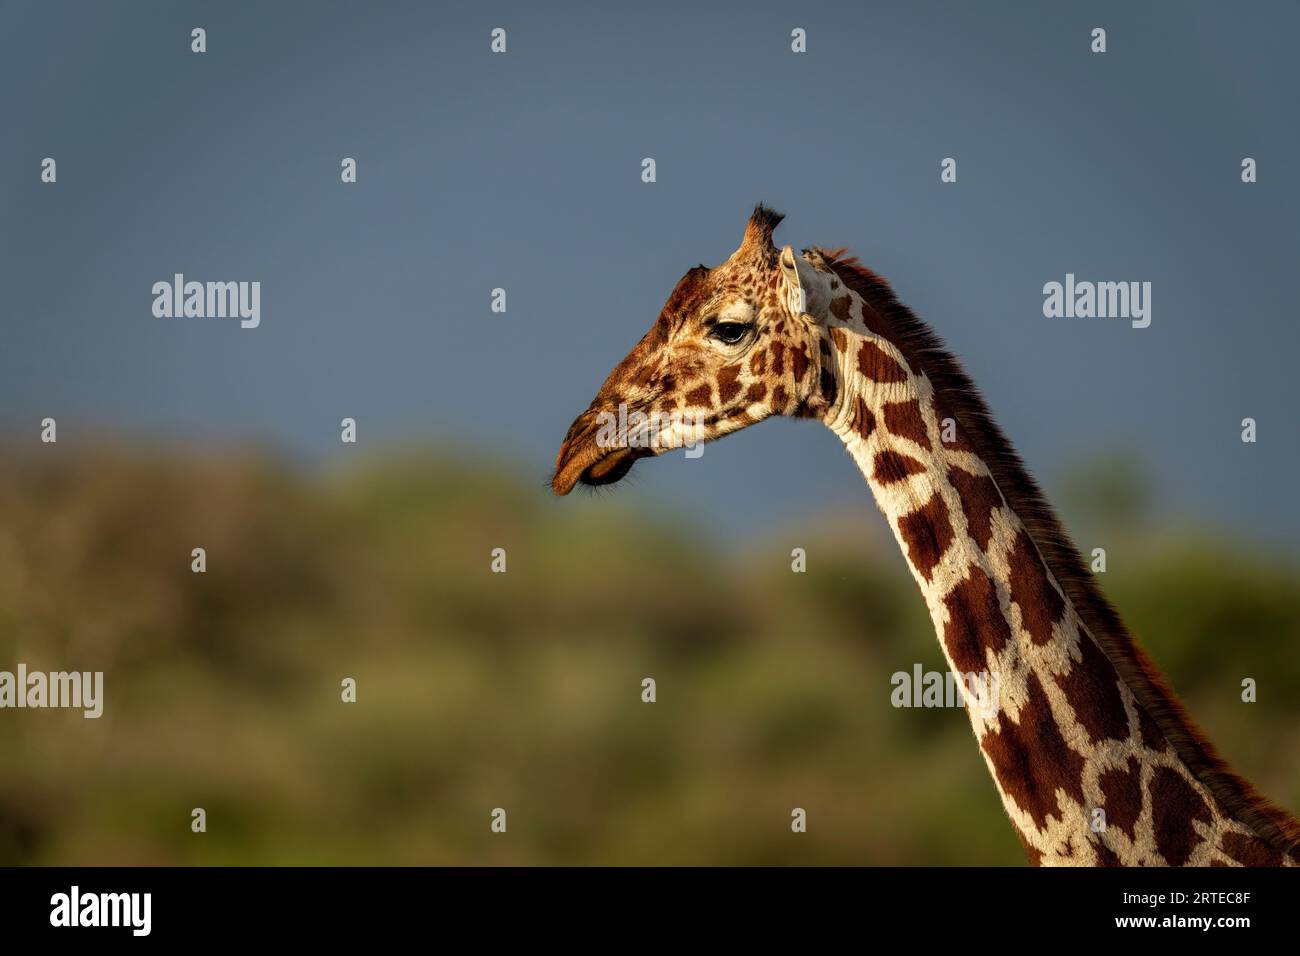 Portrait rapproché de la tête et du cou d'une girafe réticulée (Giraffa reticulata) à la lumière chaude ; Segera, Laikipia, Kenya Banque D'Images